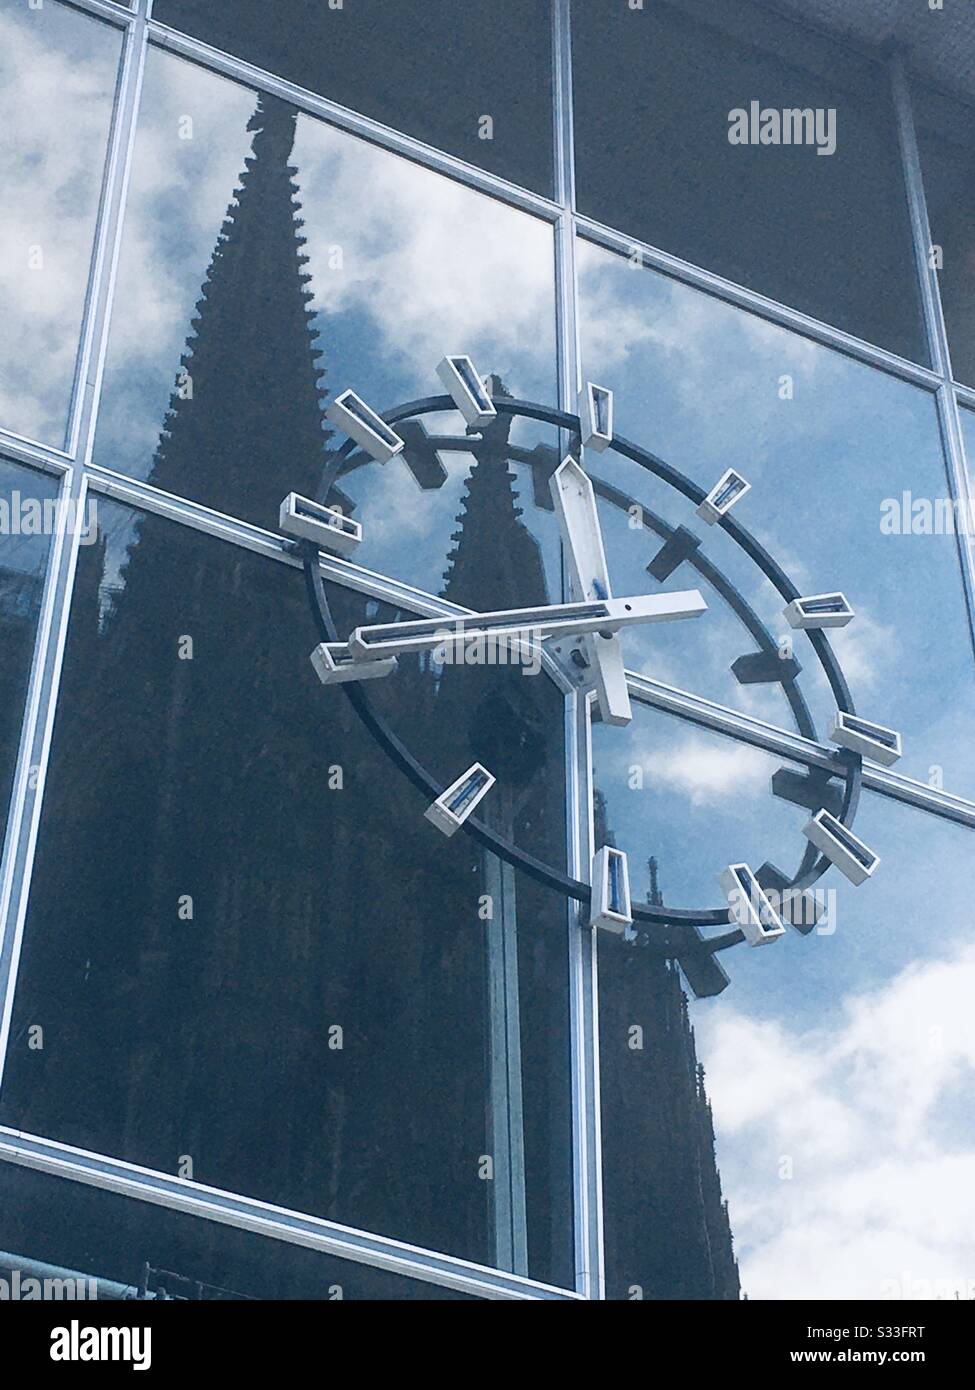 Allemagne, Köln, fév. 2020: Kölner Dom avec horloge. Banque D'Images